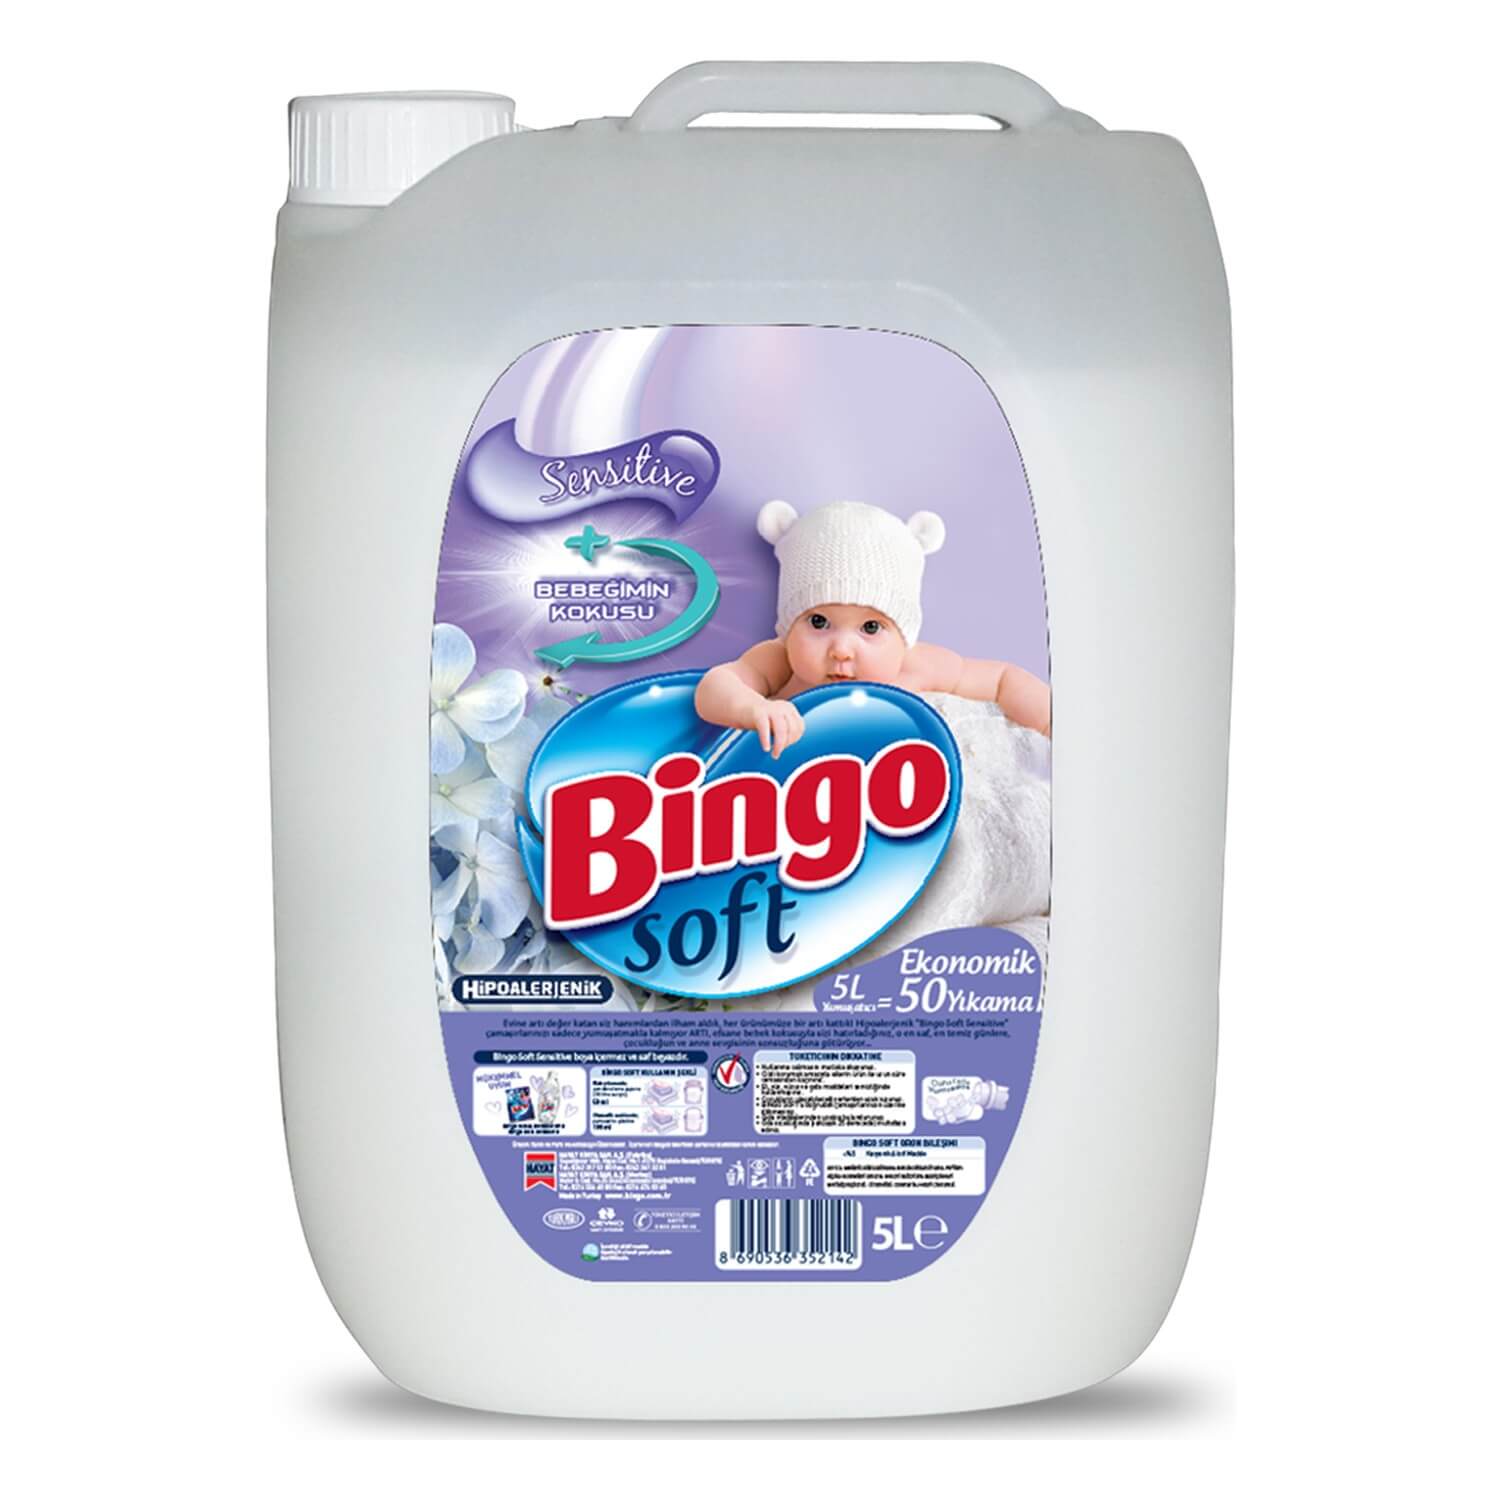 Bingo Soft Yumuşatıcı Sensitive 50 Yıkama 5 Lt